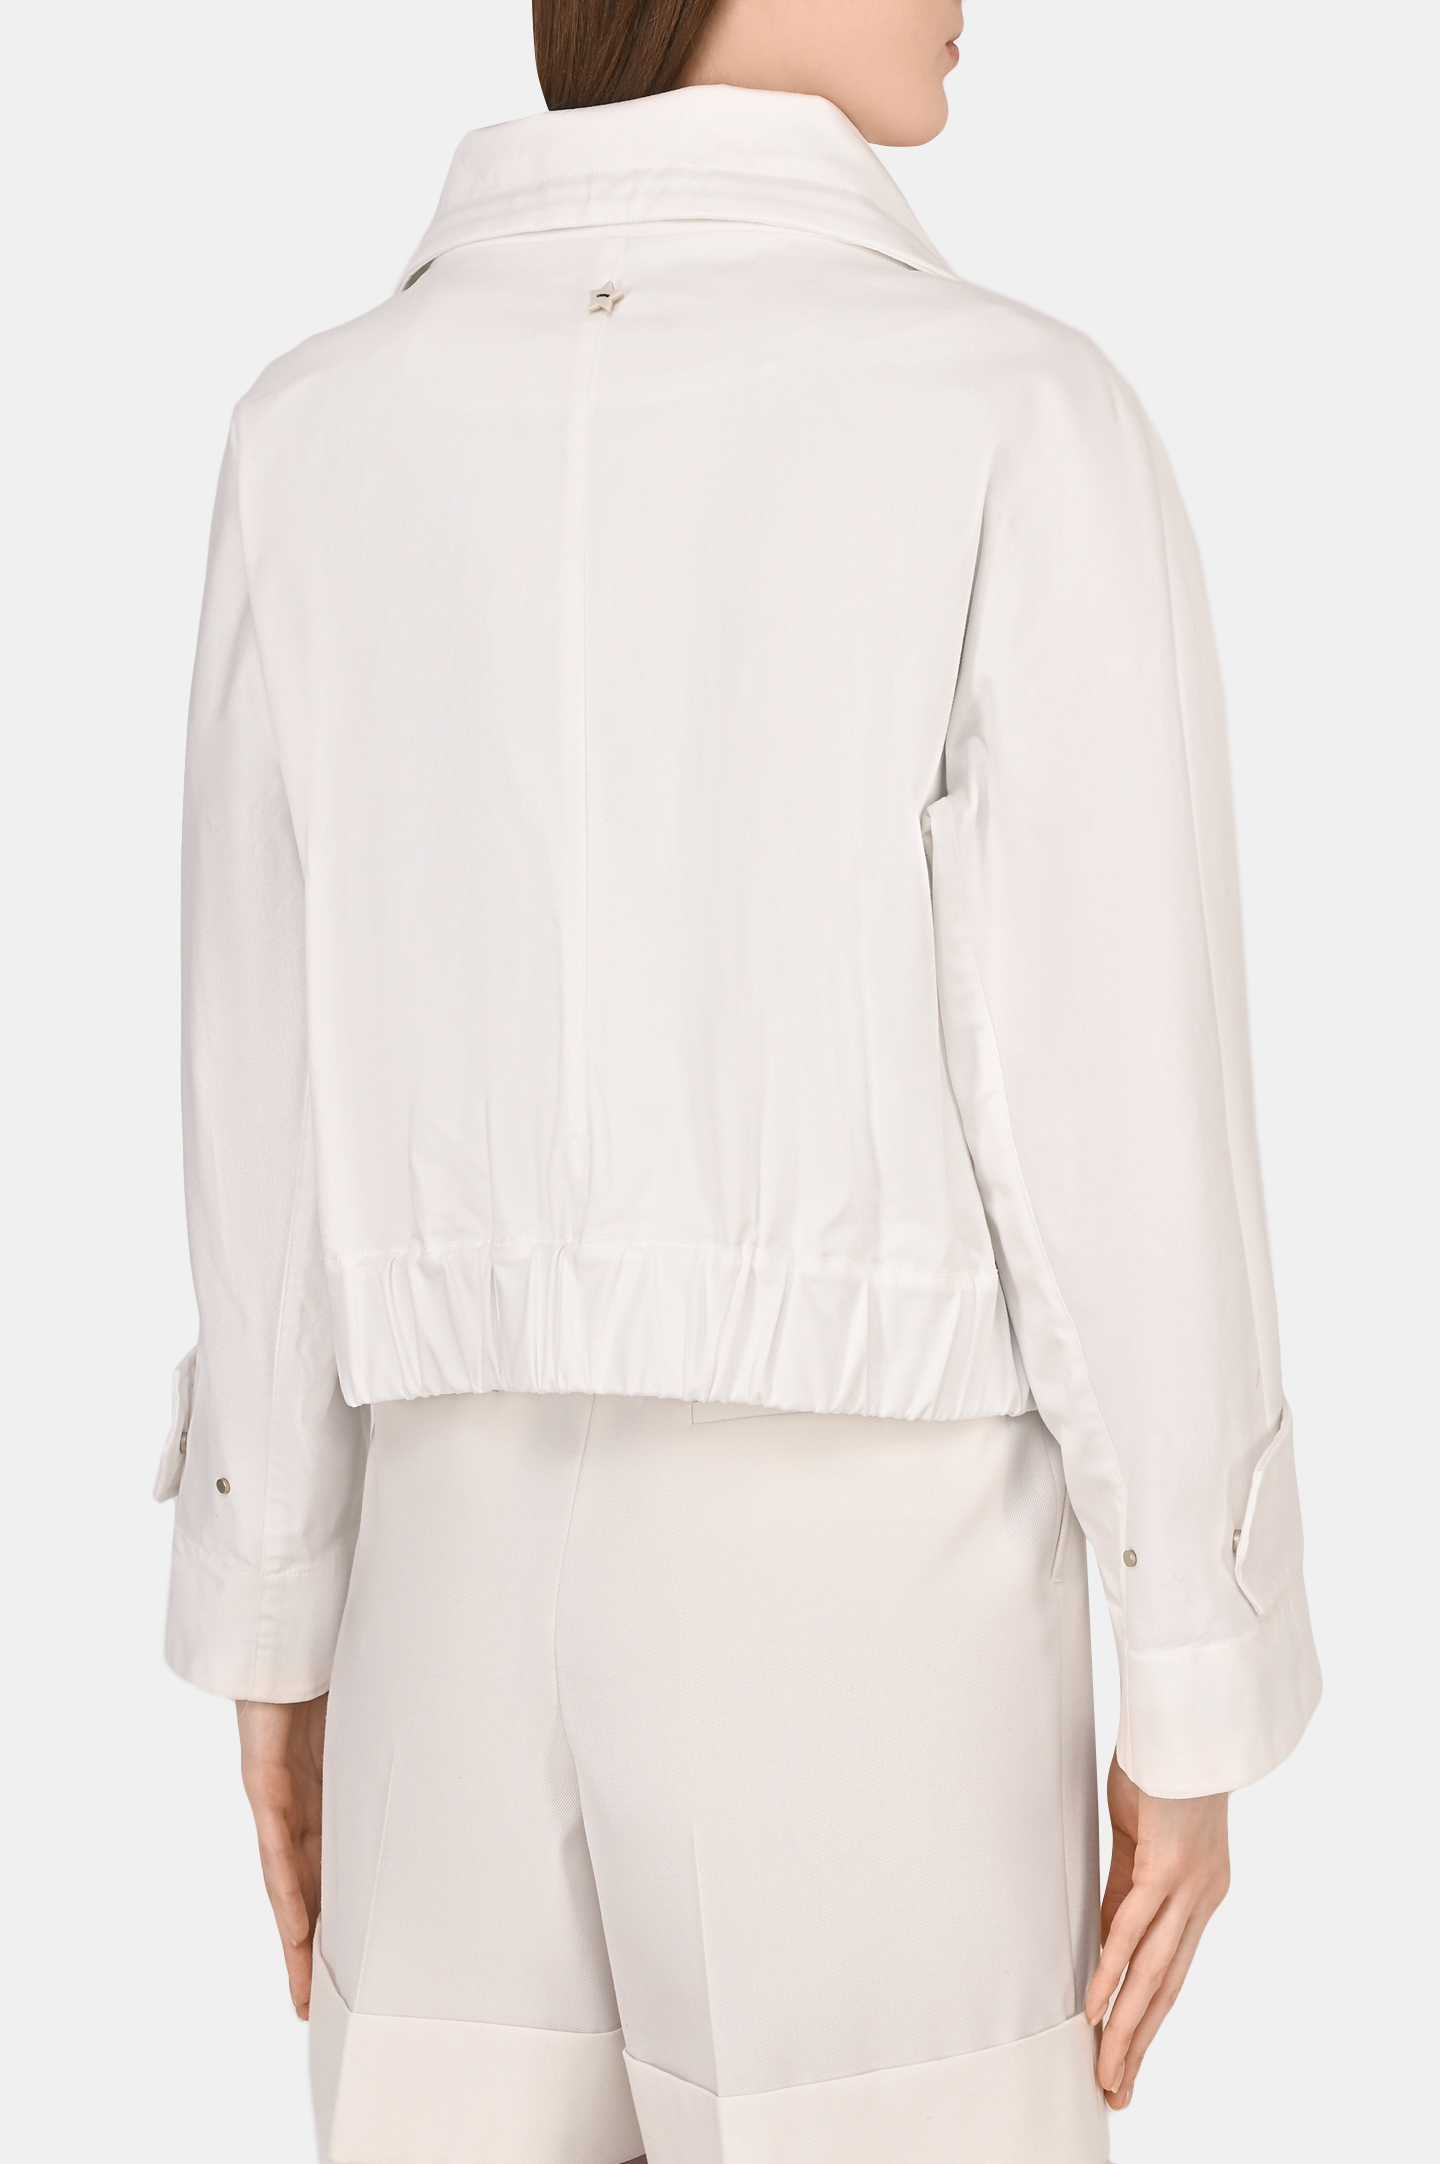 Куртка LORENA ANTONIAZZI P2221CP6A, цвет: Белый, Женский